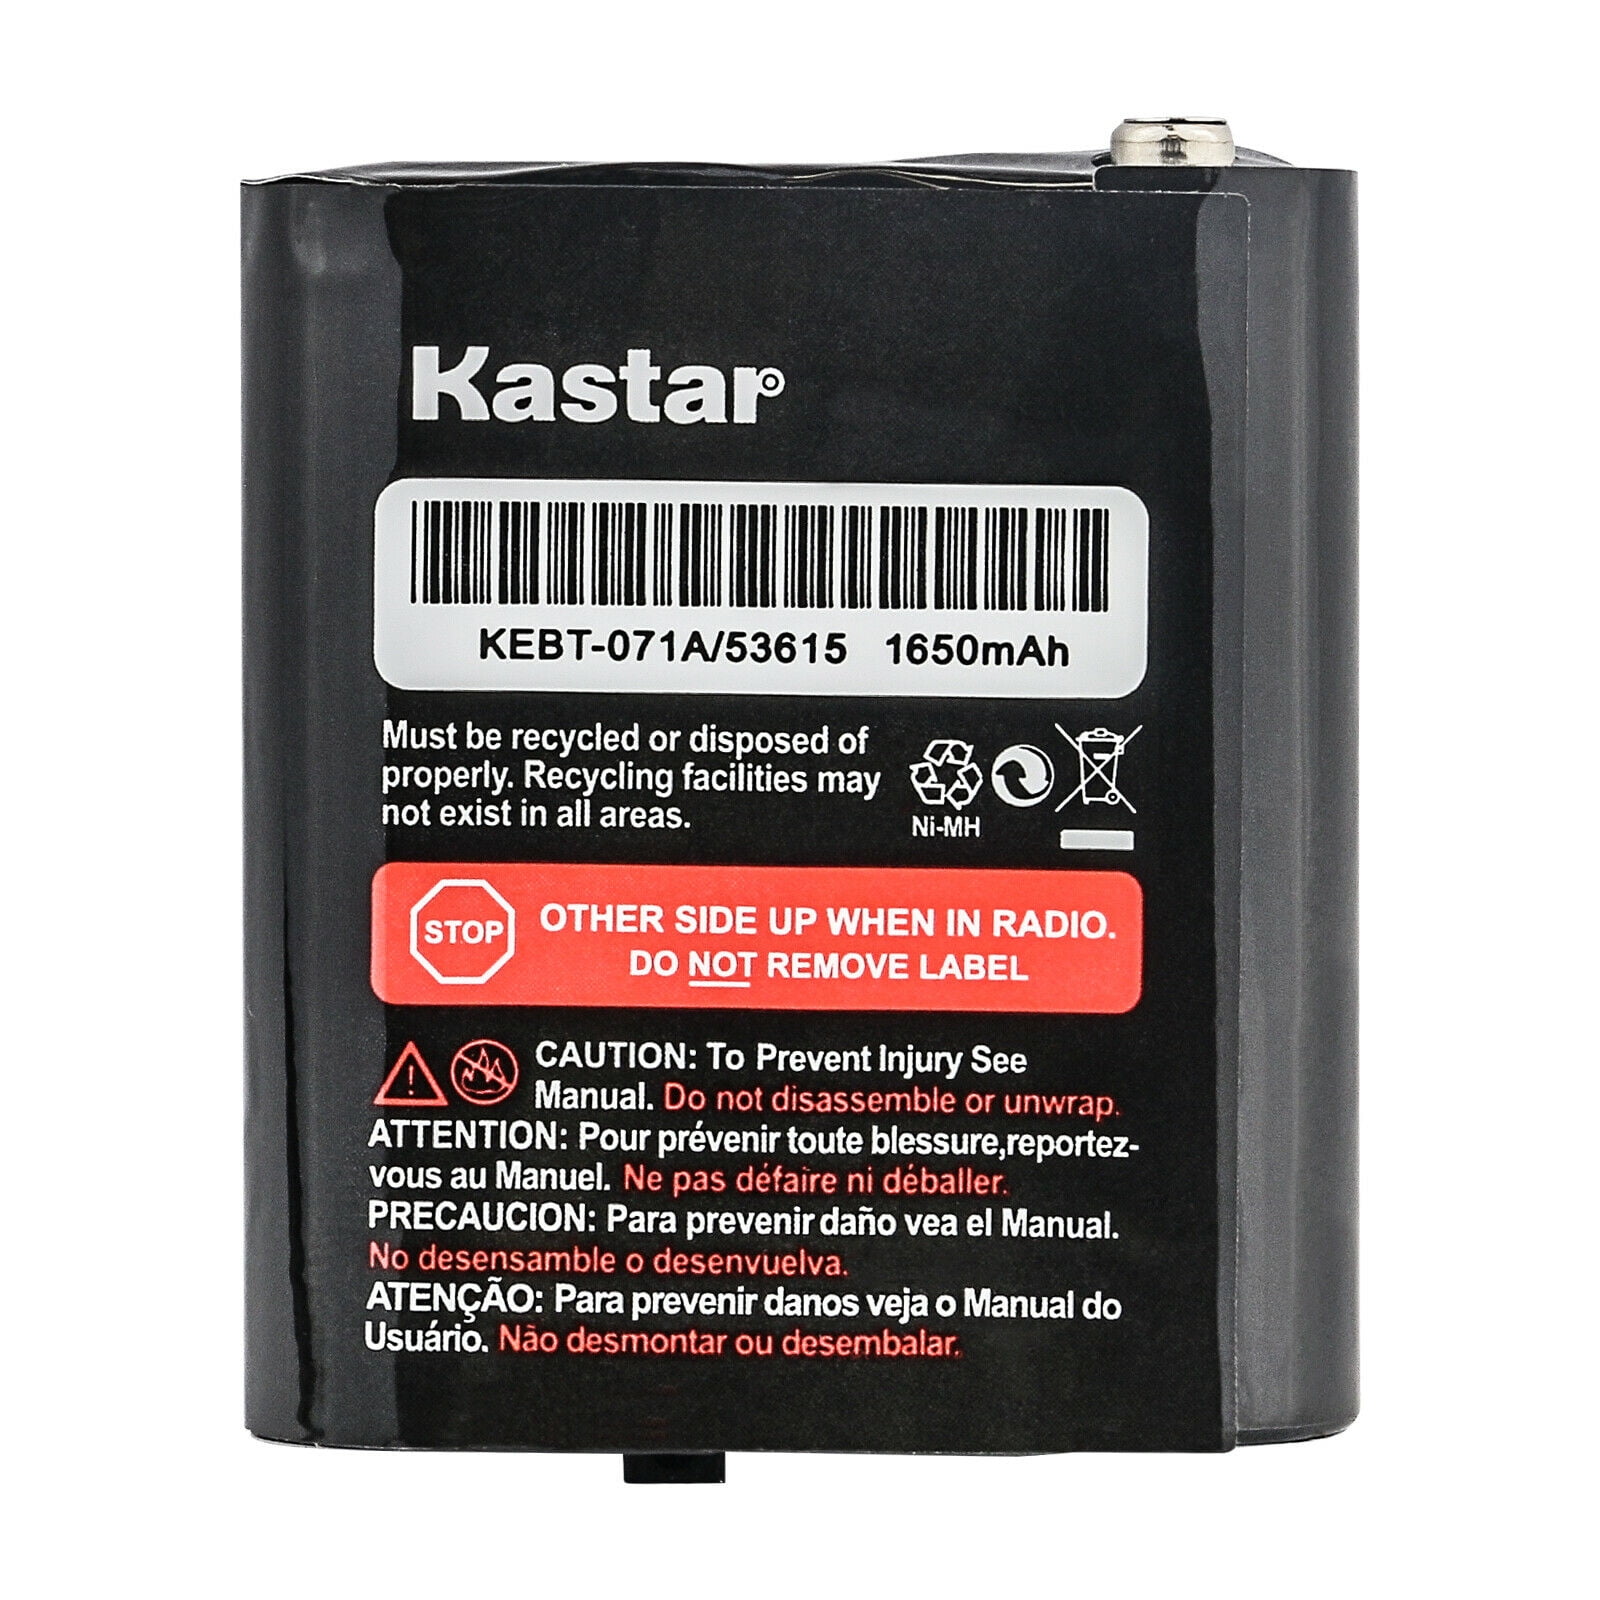 Kastar 2-Pack 3.6V 53615 Battery Compatible with Motorola Talkabout T605 H20 Talkabout T631 Talkabout T480 Talkabout T500 Talkabout T600 H20 Talkabout T470 T47X Talkabout T605 H20 